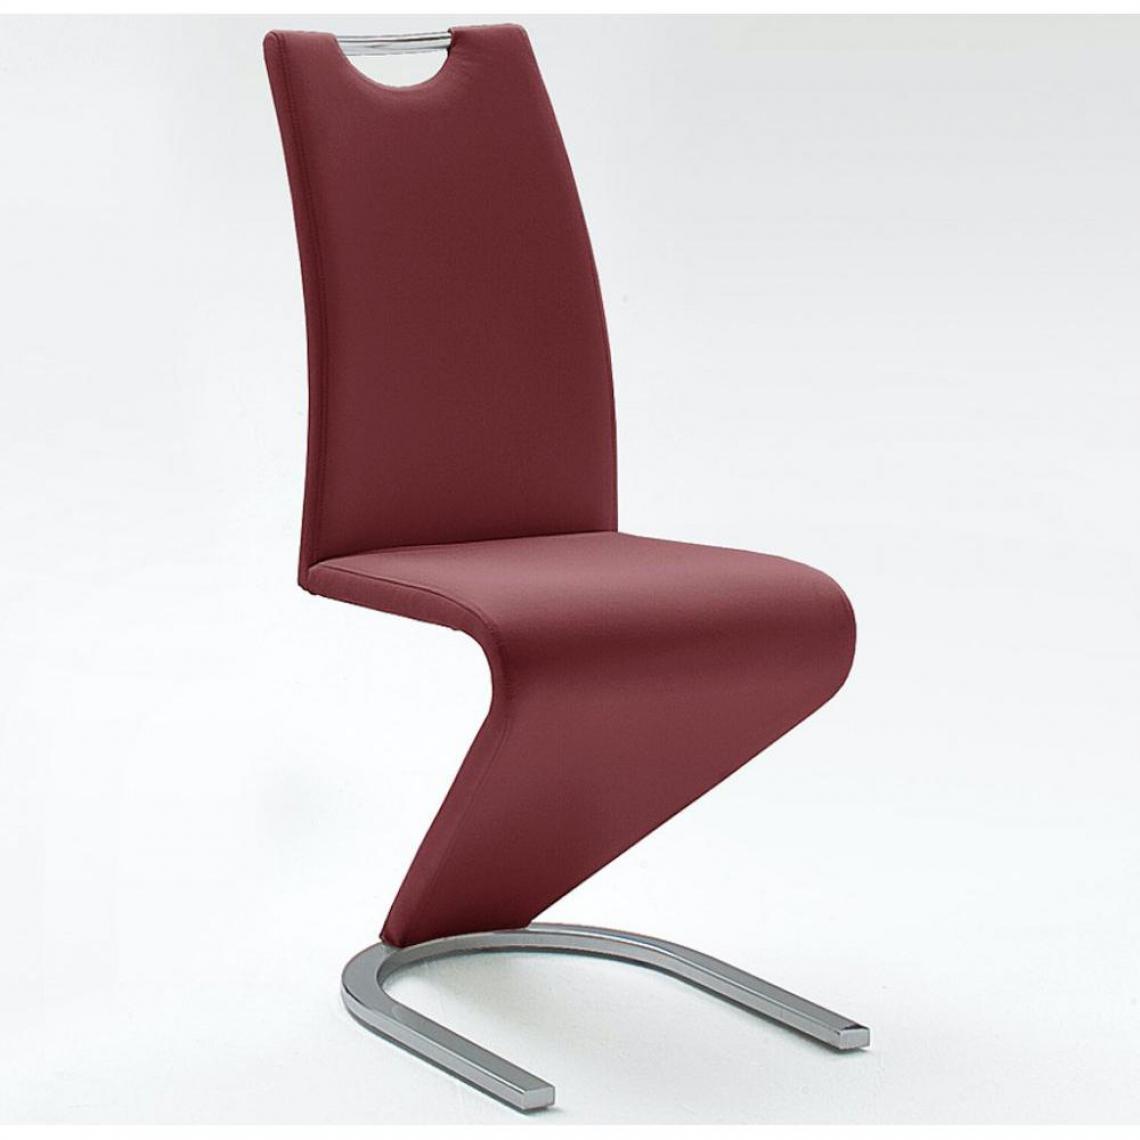 Inside 75 - Lot de 2 chaises ALBI tissu bordeaux avec piètement tube chrome - Chaises